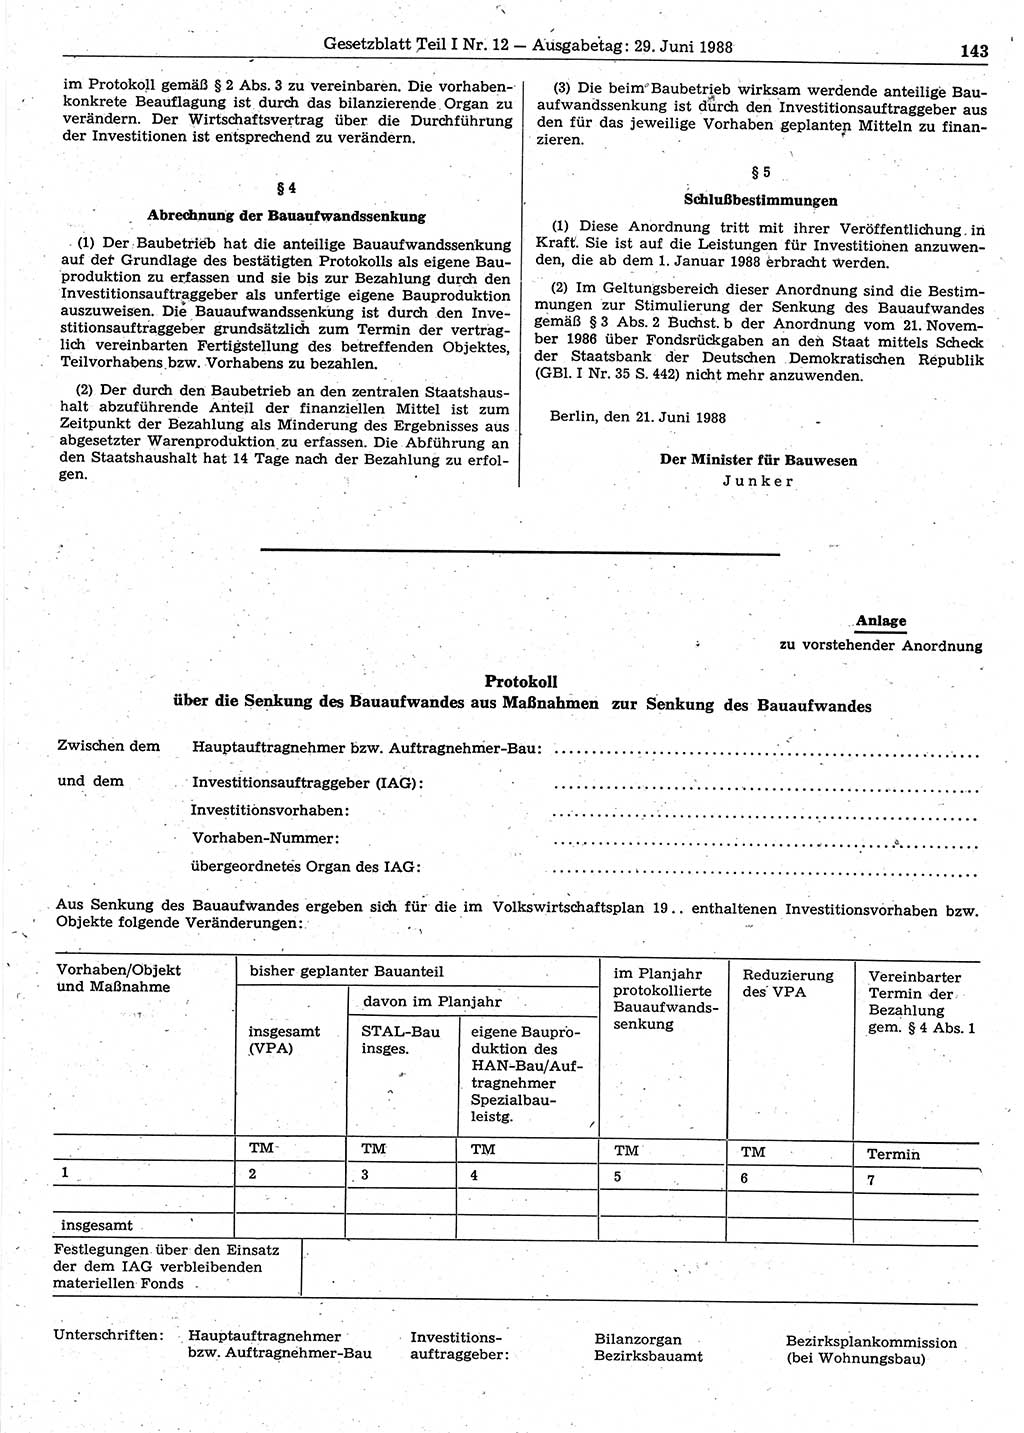 Gesetzblatt (GBl.) der Deutschen Demokratischen Republik (DDR) Teil Ⅰ 1988, Seite 143 (GBl. DDR Ⅰ 1988, S. 143)